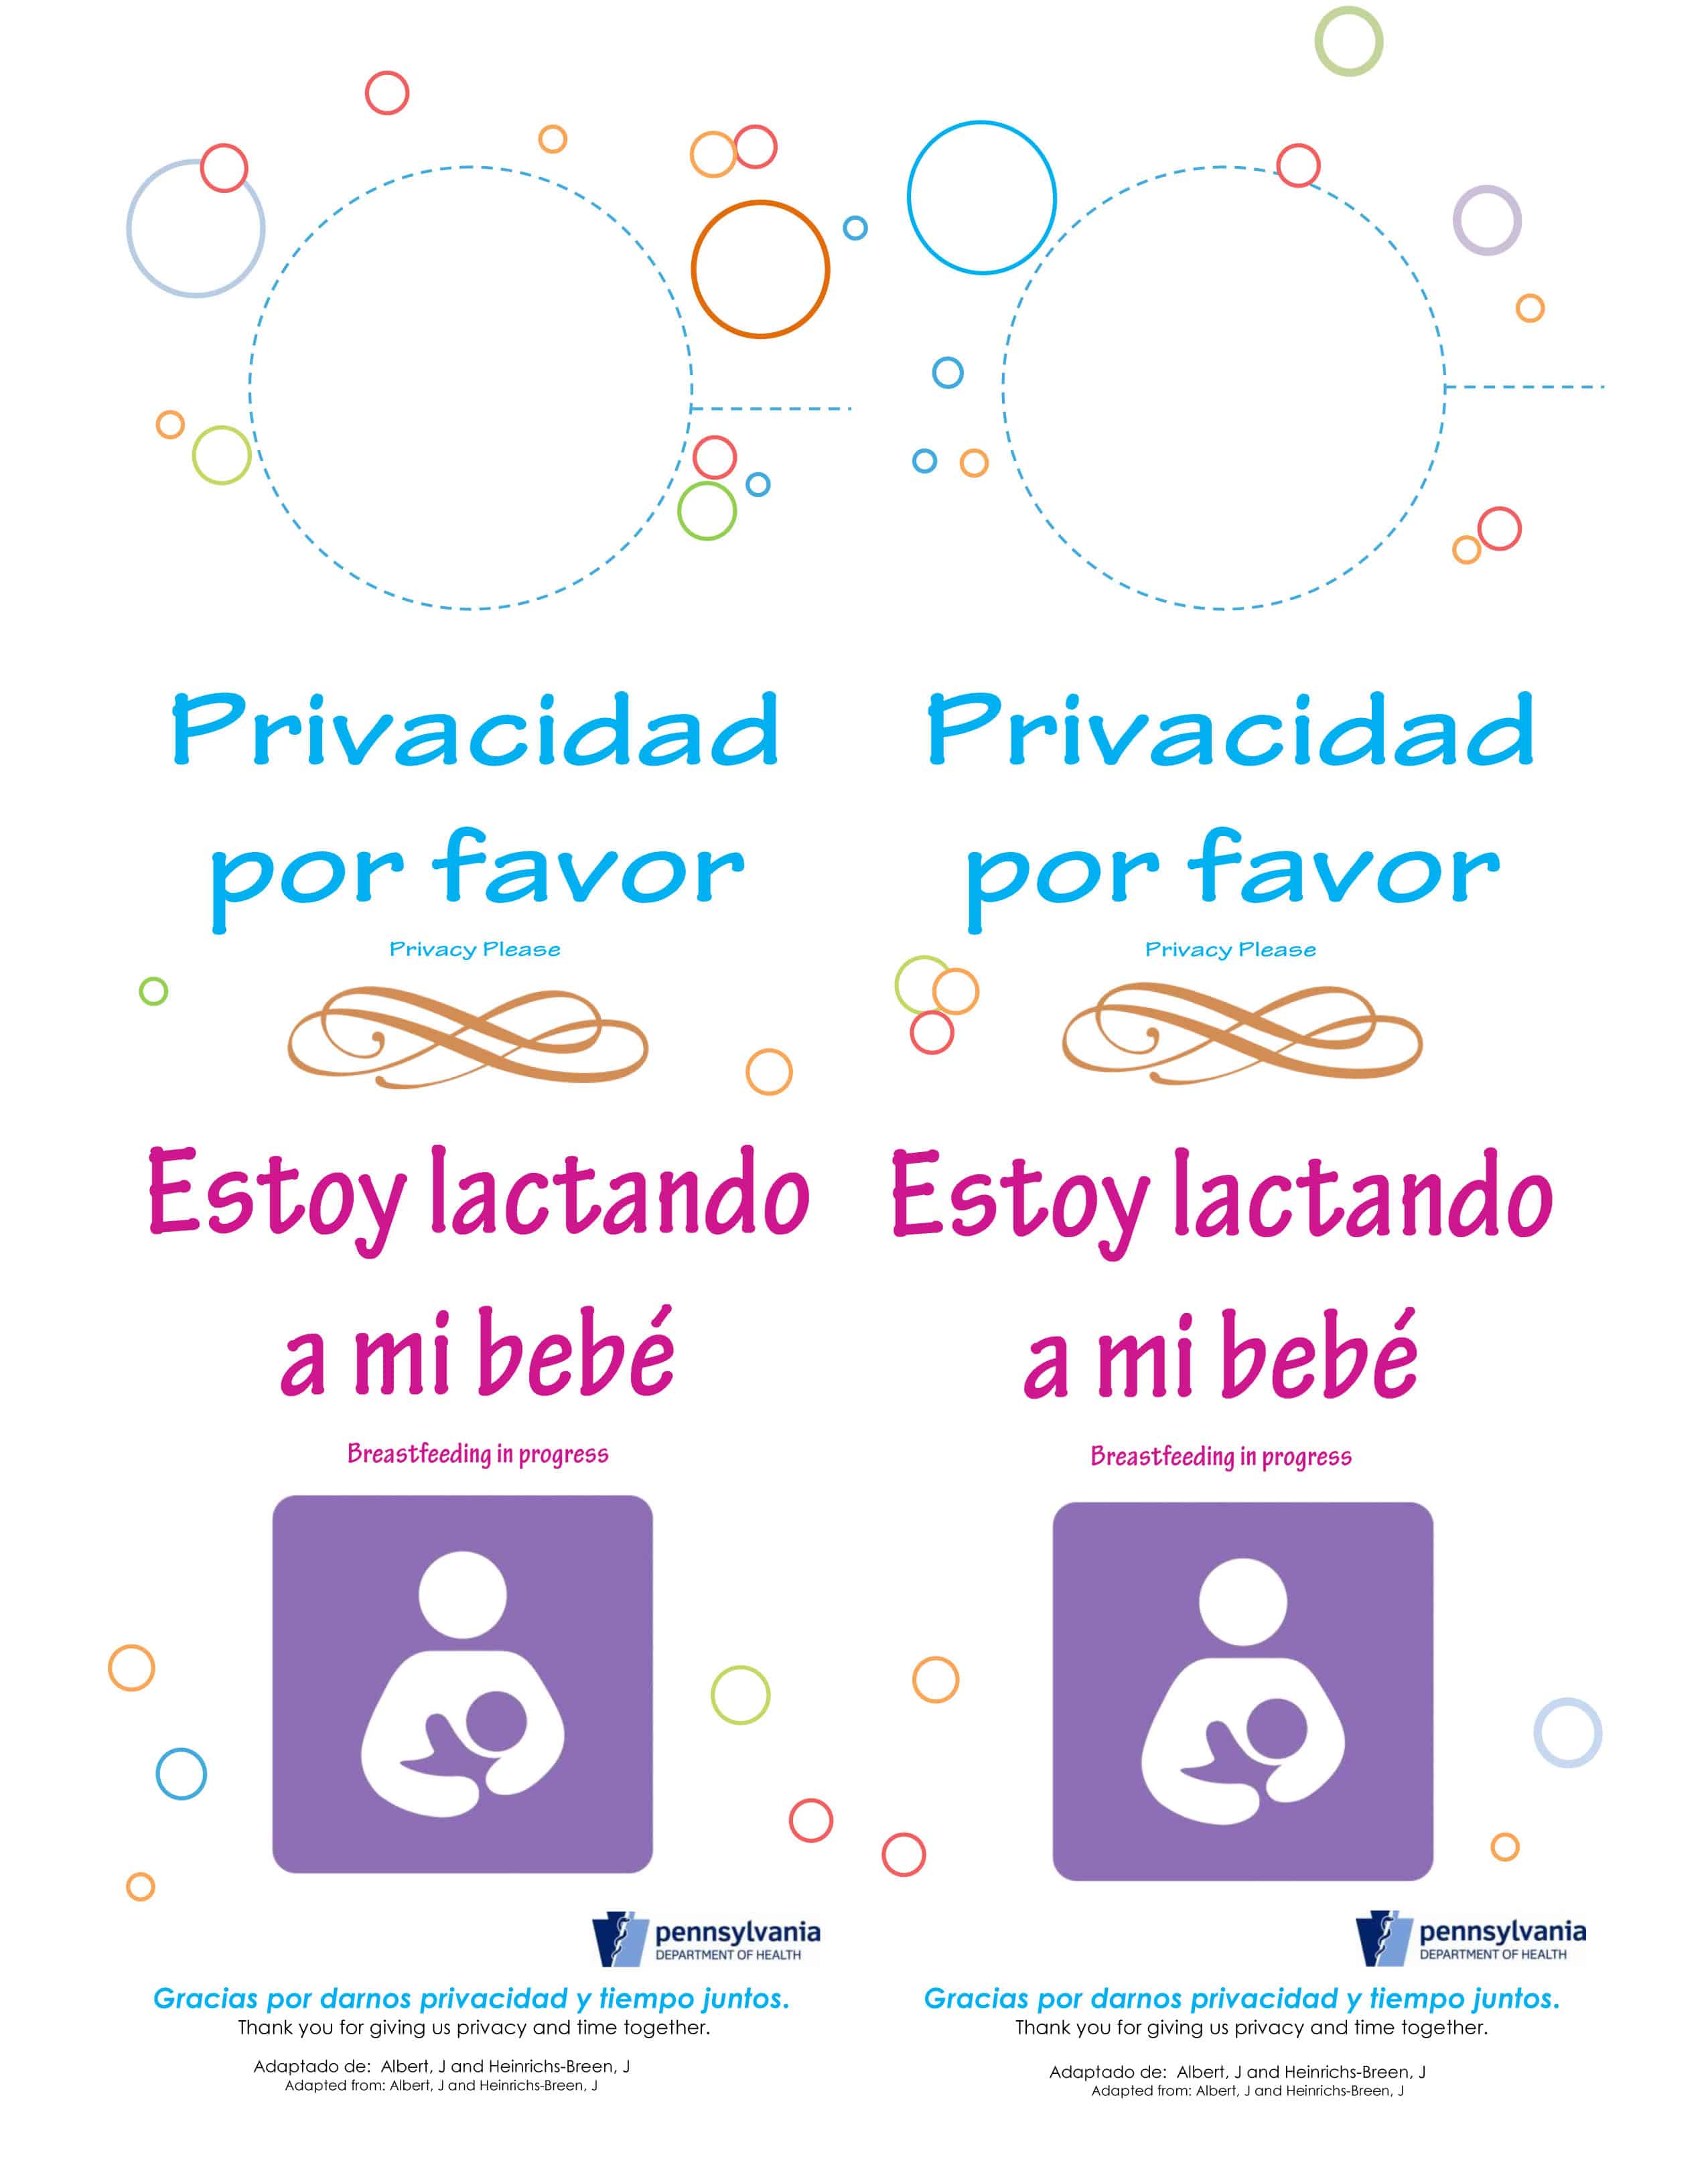 Breastfeeding door hanger Spanish version